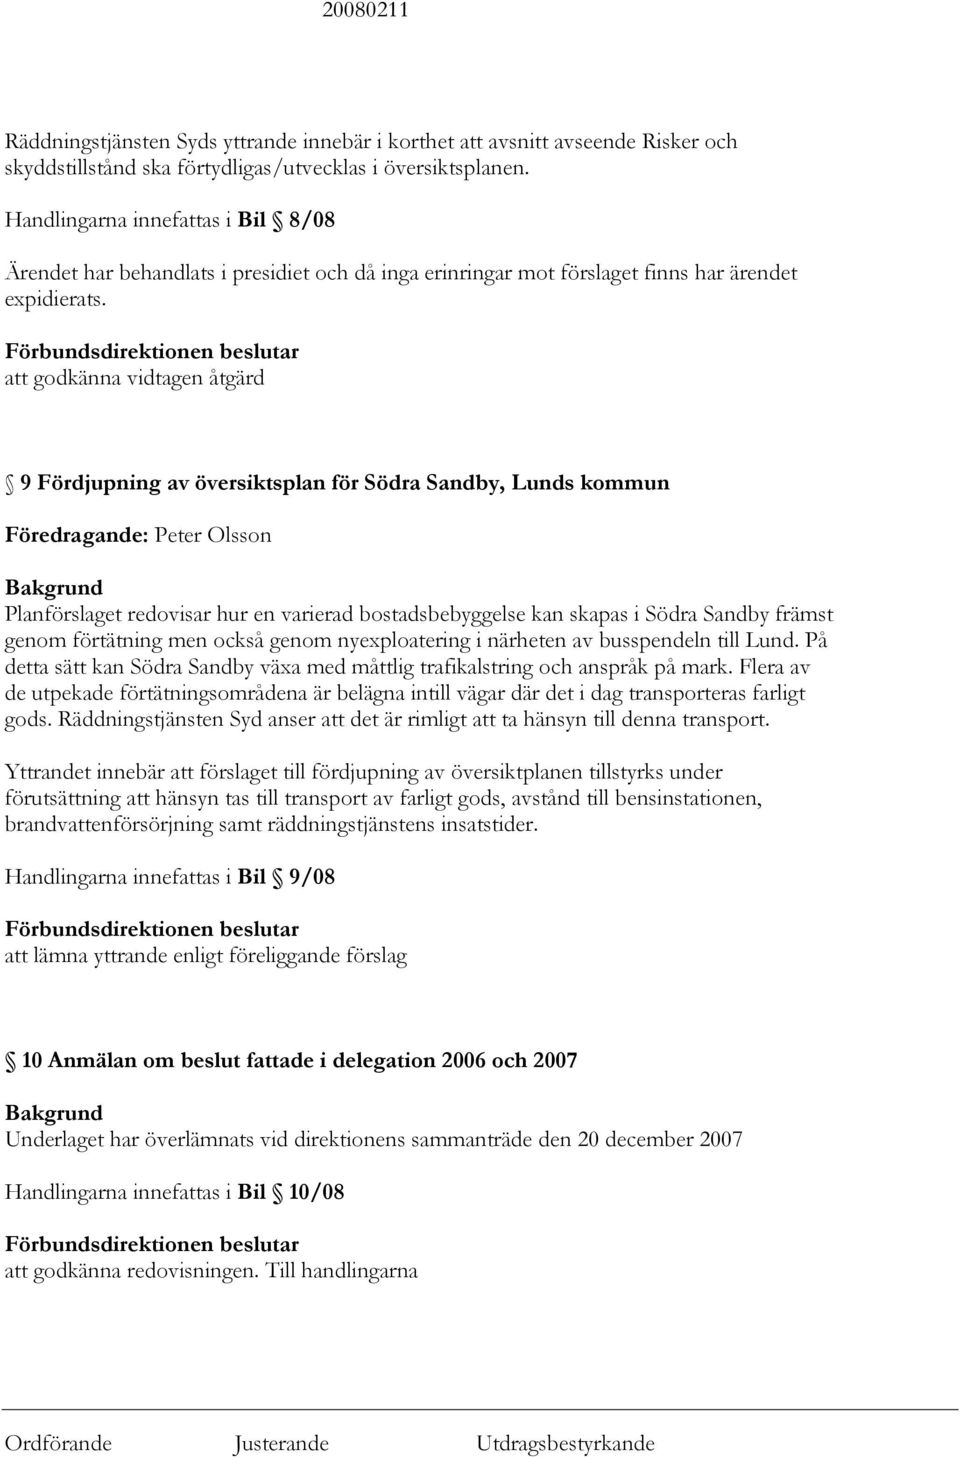 att godkänna vidtagen åtgärd 9 Fördjupning av översiktsplan för Södra Sandby, Lunds kommun Föredragande: Peter Olsson Planförslaget redovisar hur en varierad bostadsbebyggelse kan skapas i Södra